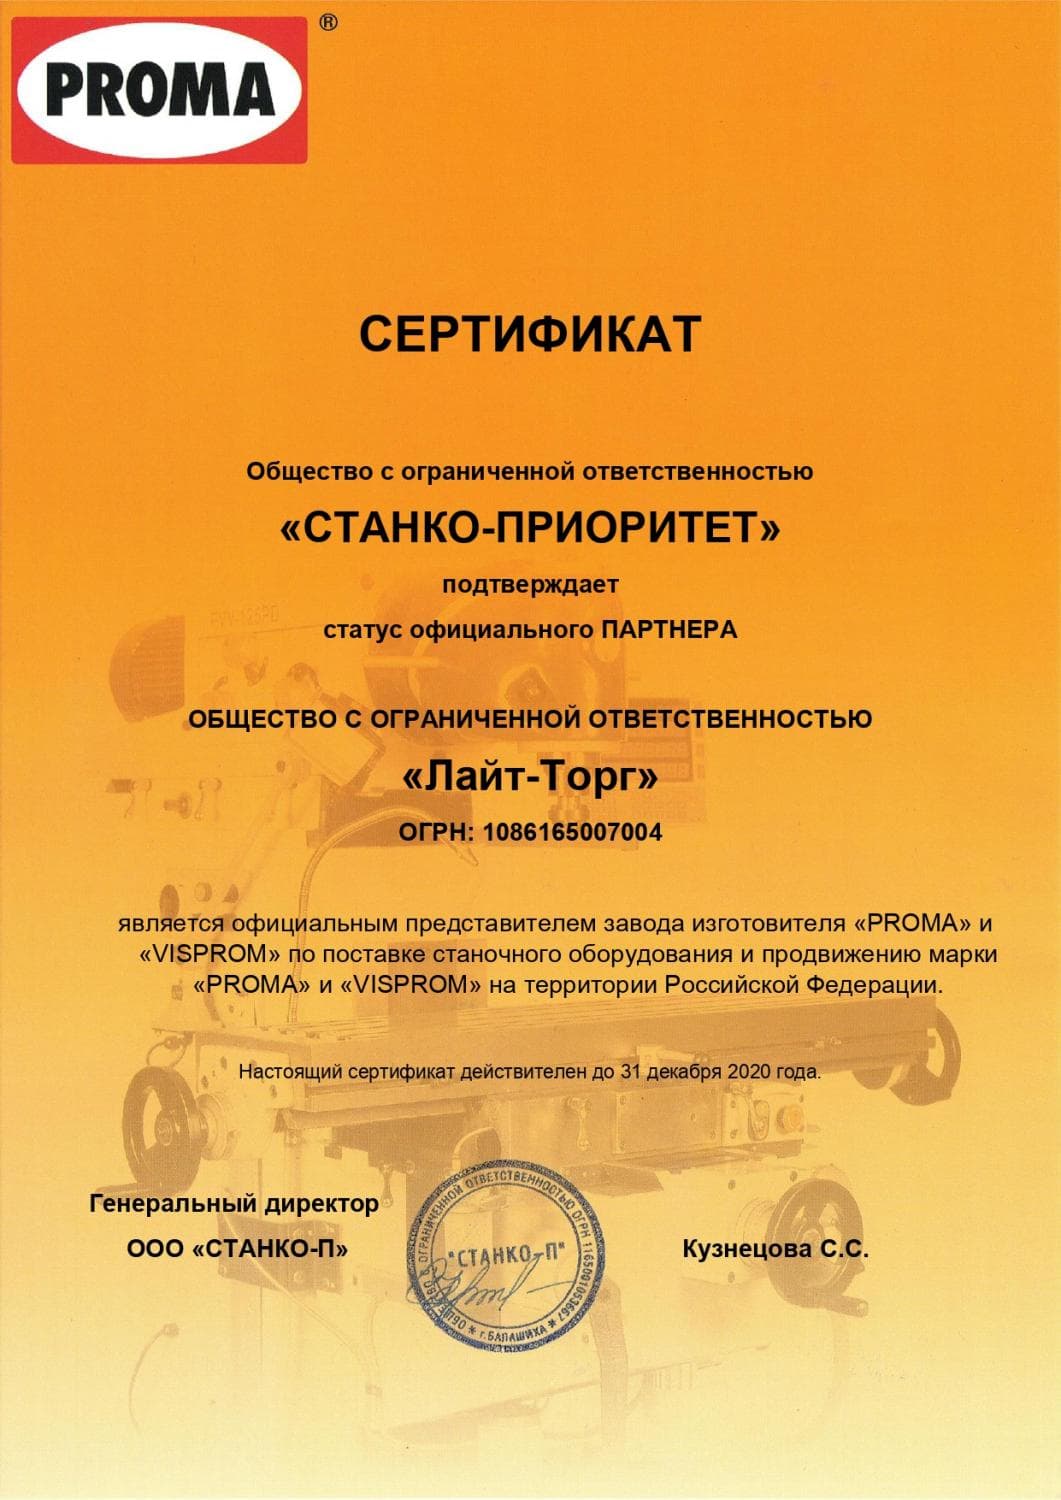 Сертификат дилера PROMA